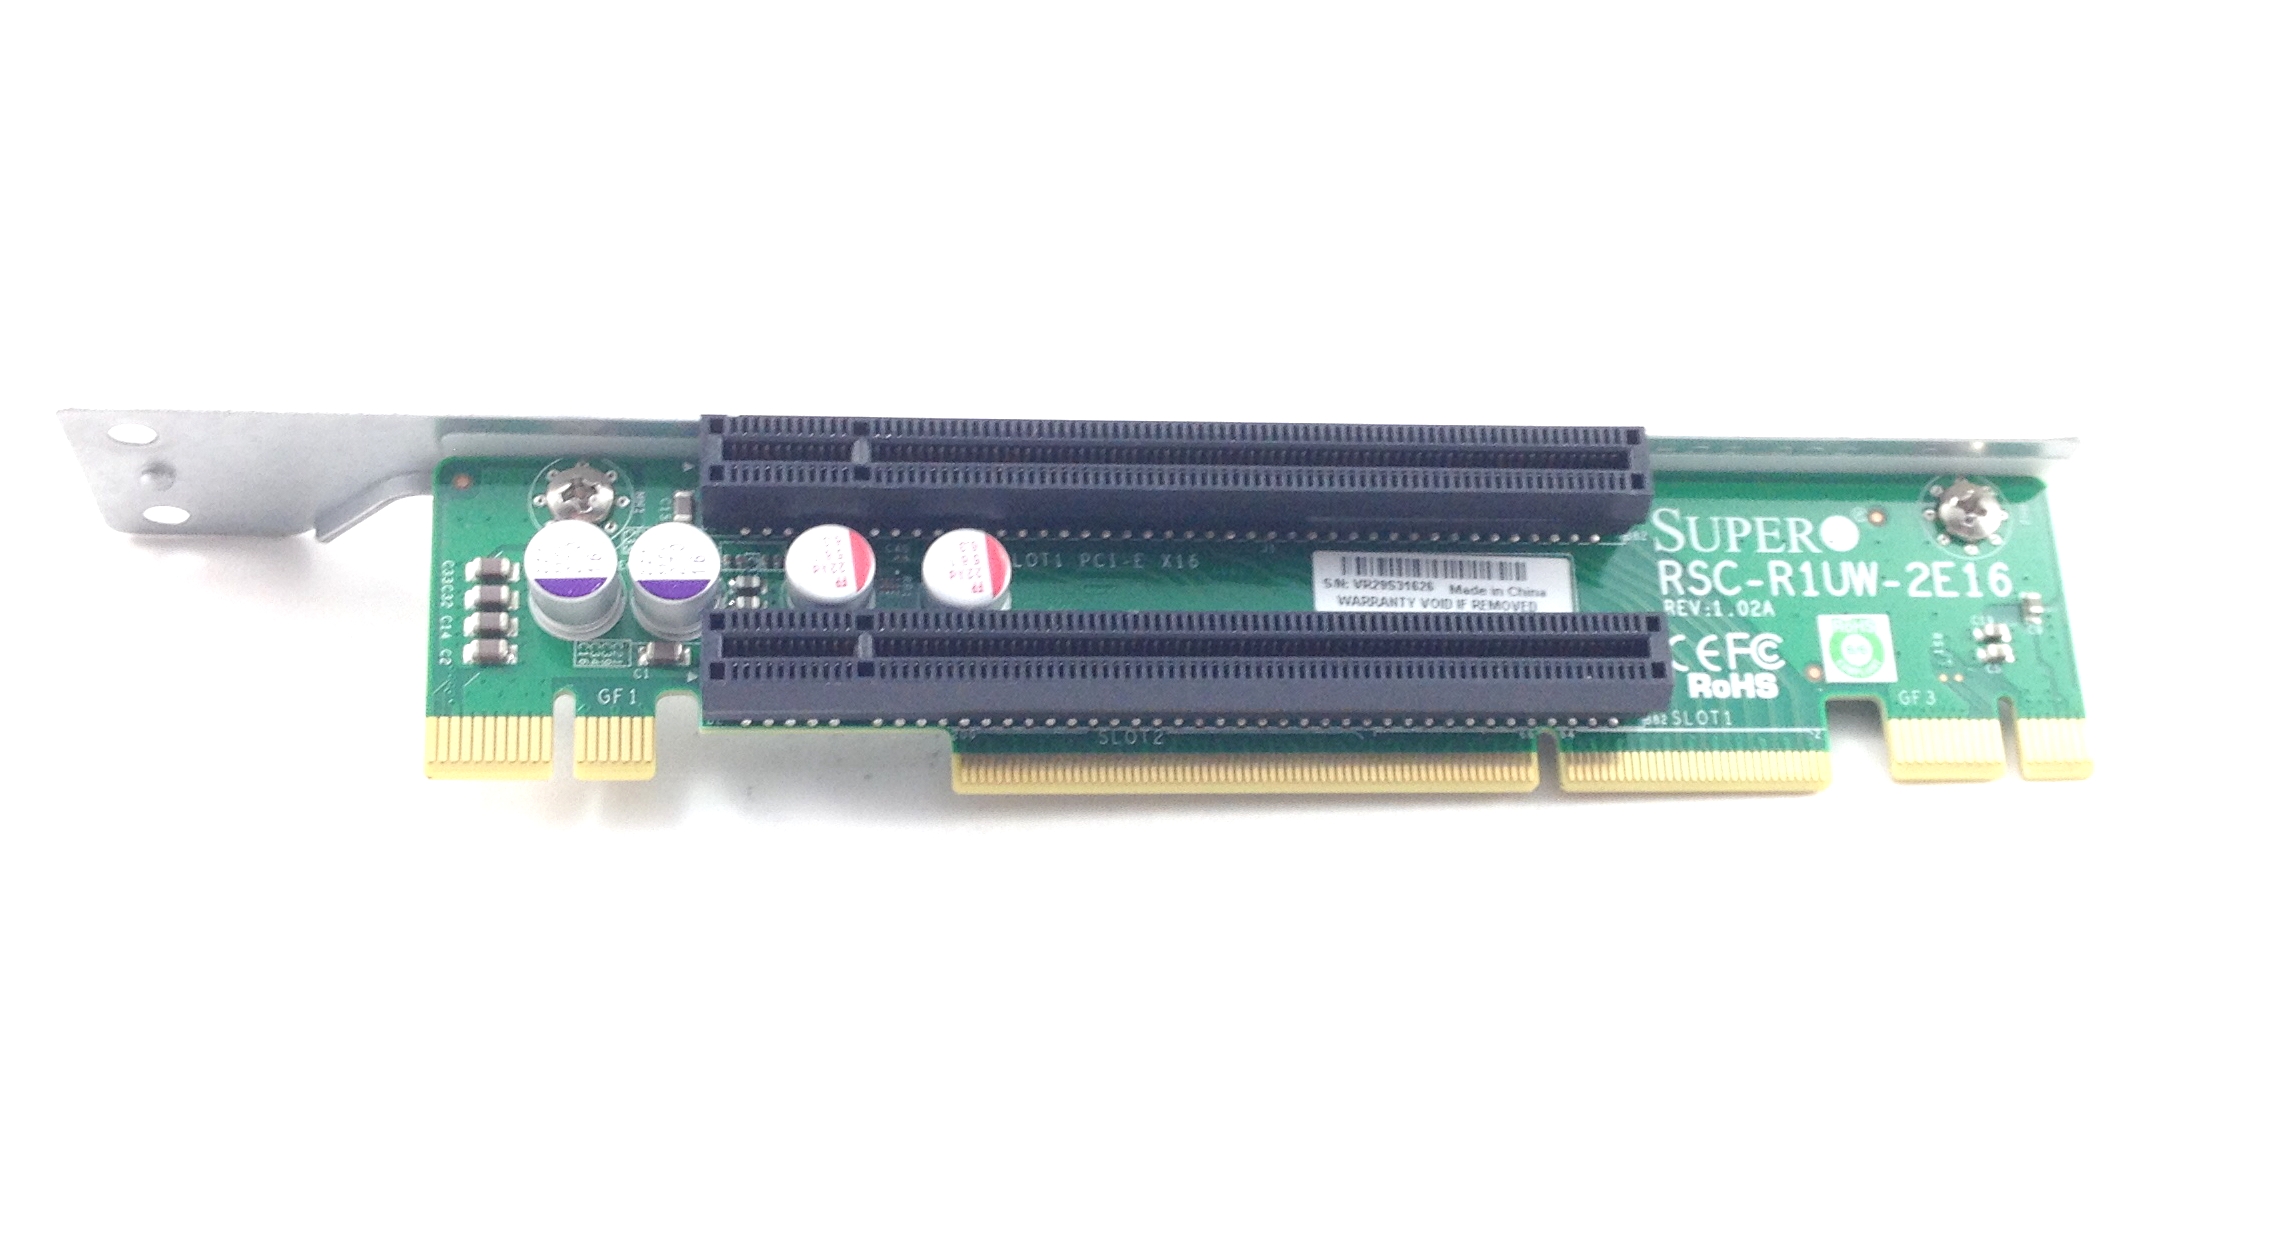 Supermicro 1U Server PCI-E X16 Riser Card (RSC-R1UW-2E16)